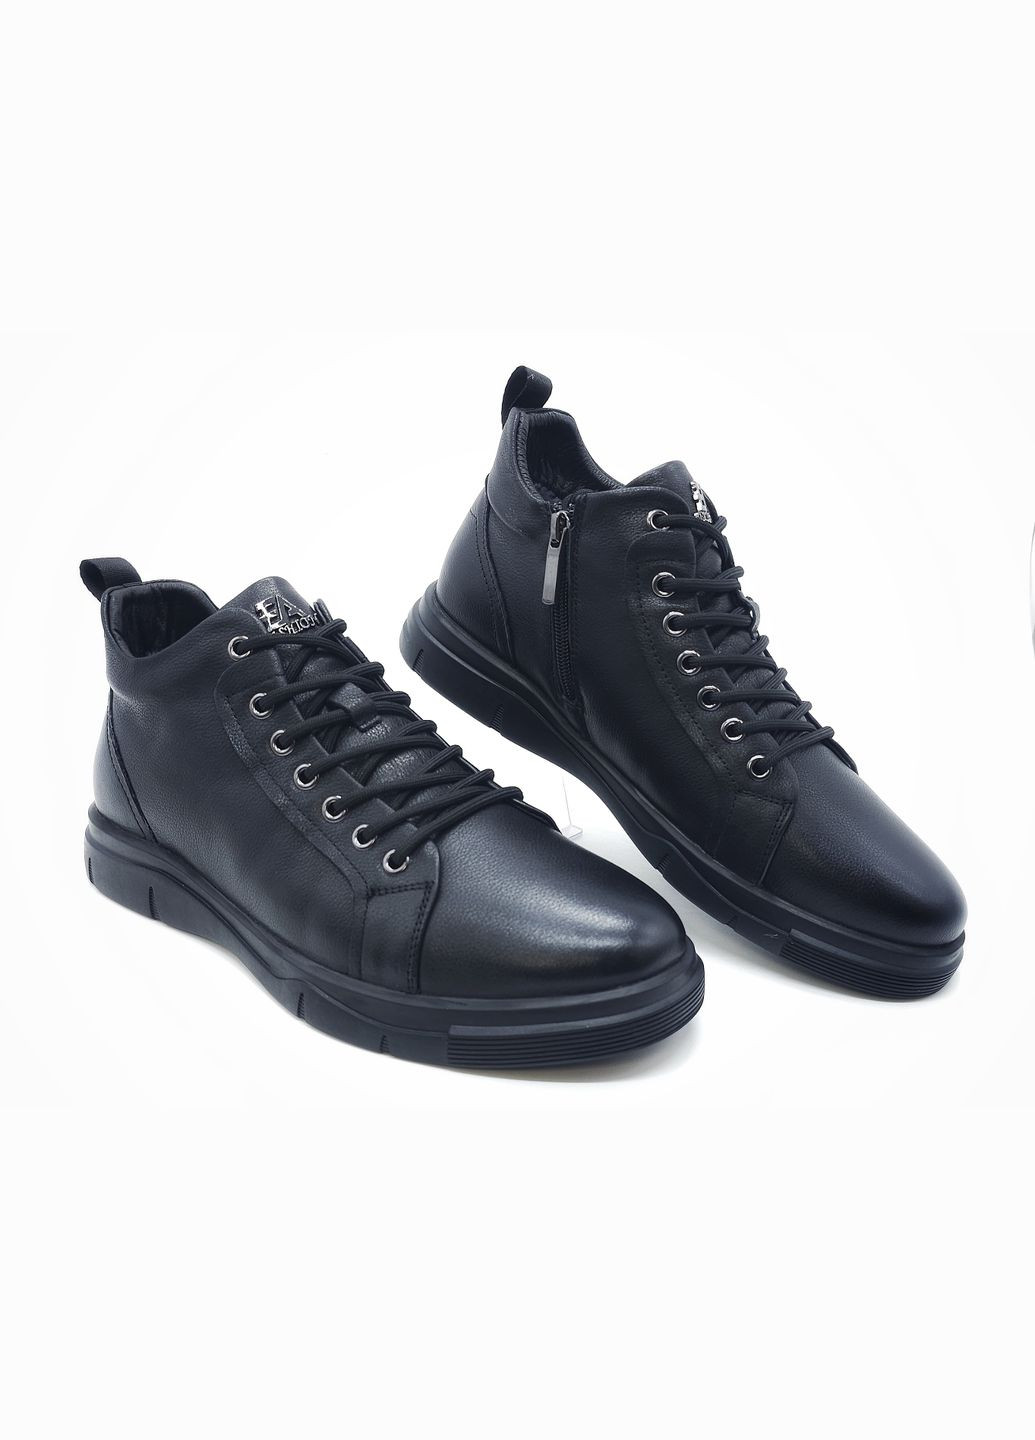 Черные осенние черевики Boss Victori